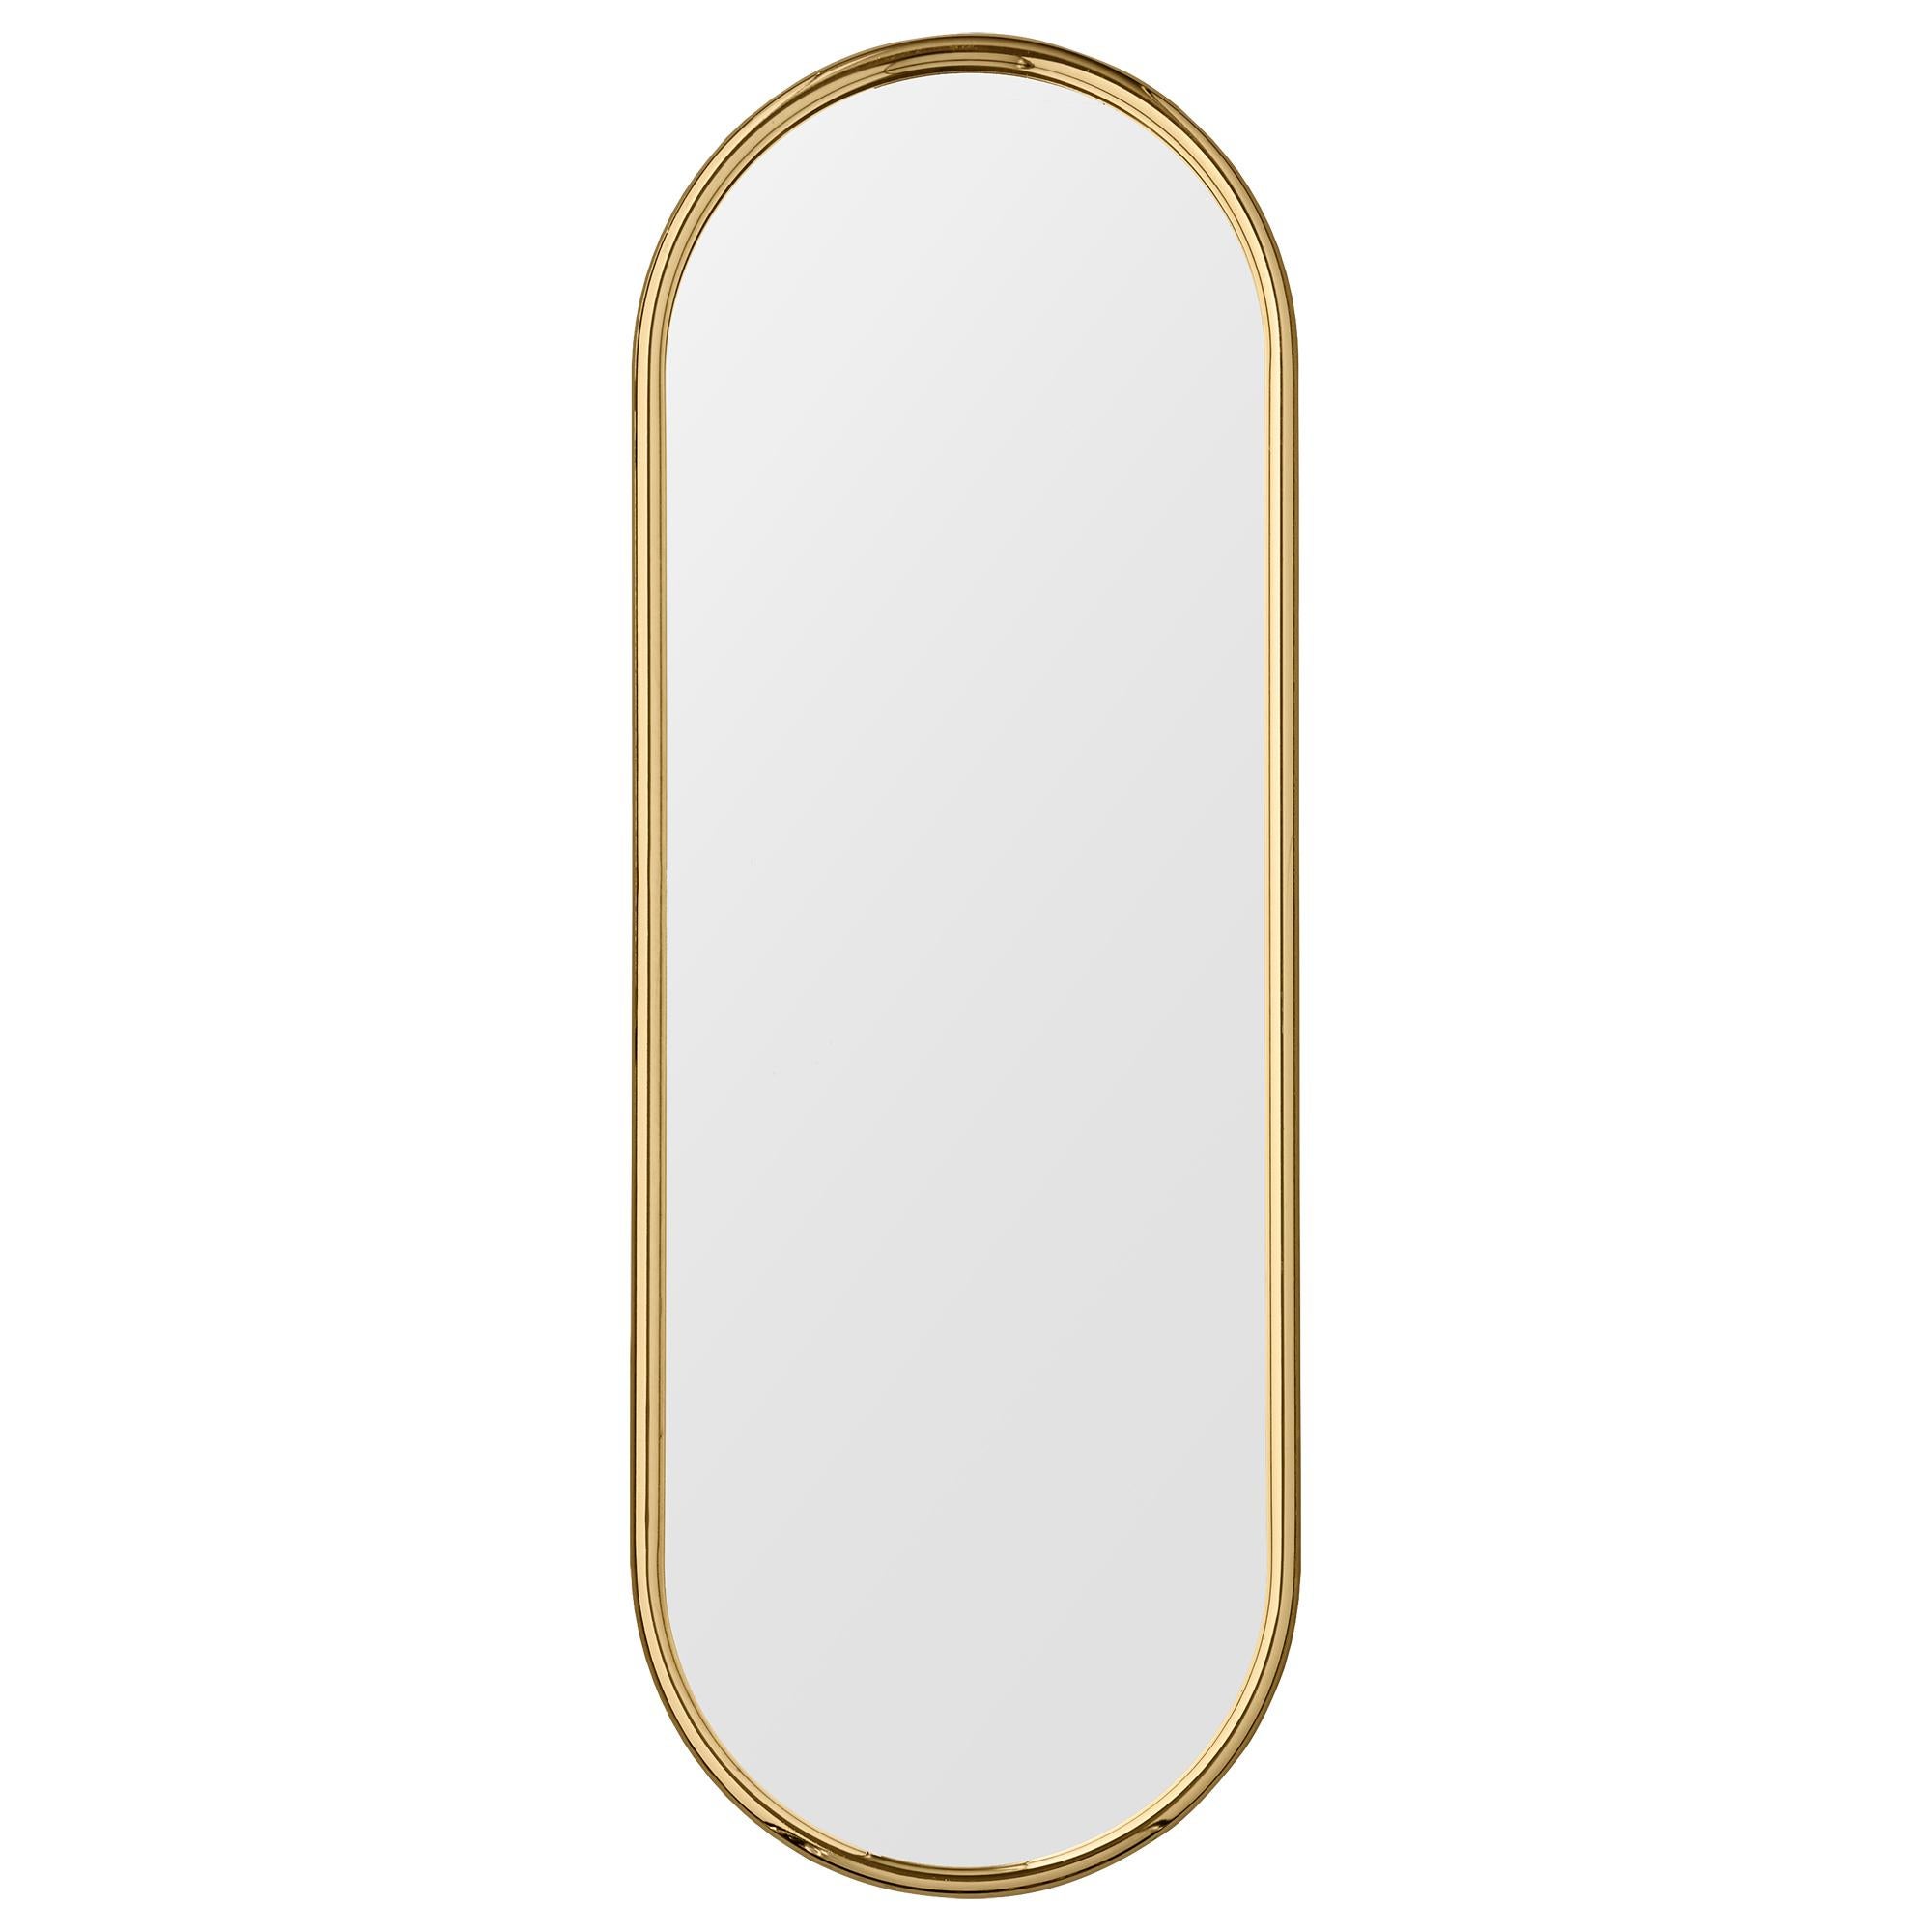 Grand miroir ovale doré Angui par AYTM
Dimensions : 39 x 2 x 108 cm
Matériaux : Verre, cuivre, MDF

Le miroir Angui, avec son cadre simple en forme de tuyau, est une beauté pour toute salle de bain, couloir ou peut-être chambre à coucher.